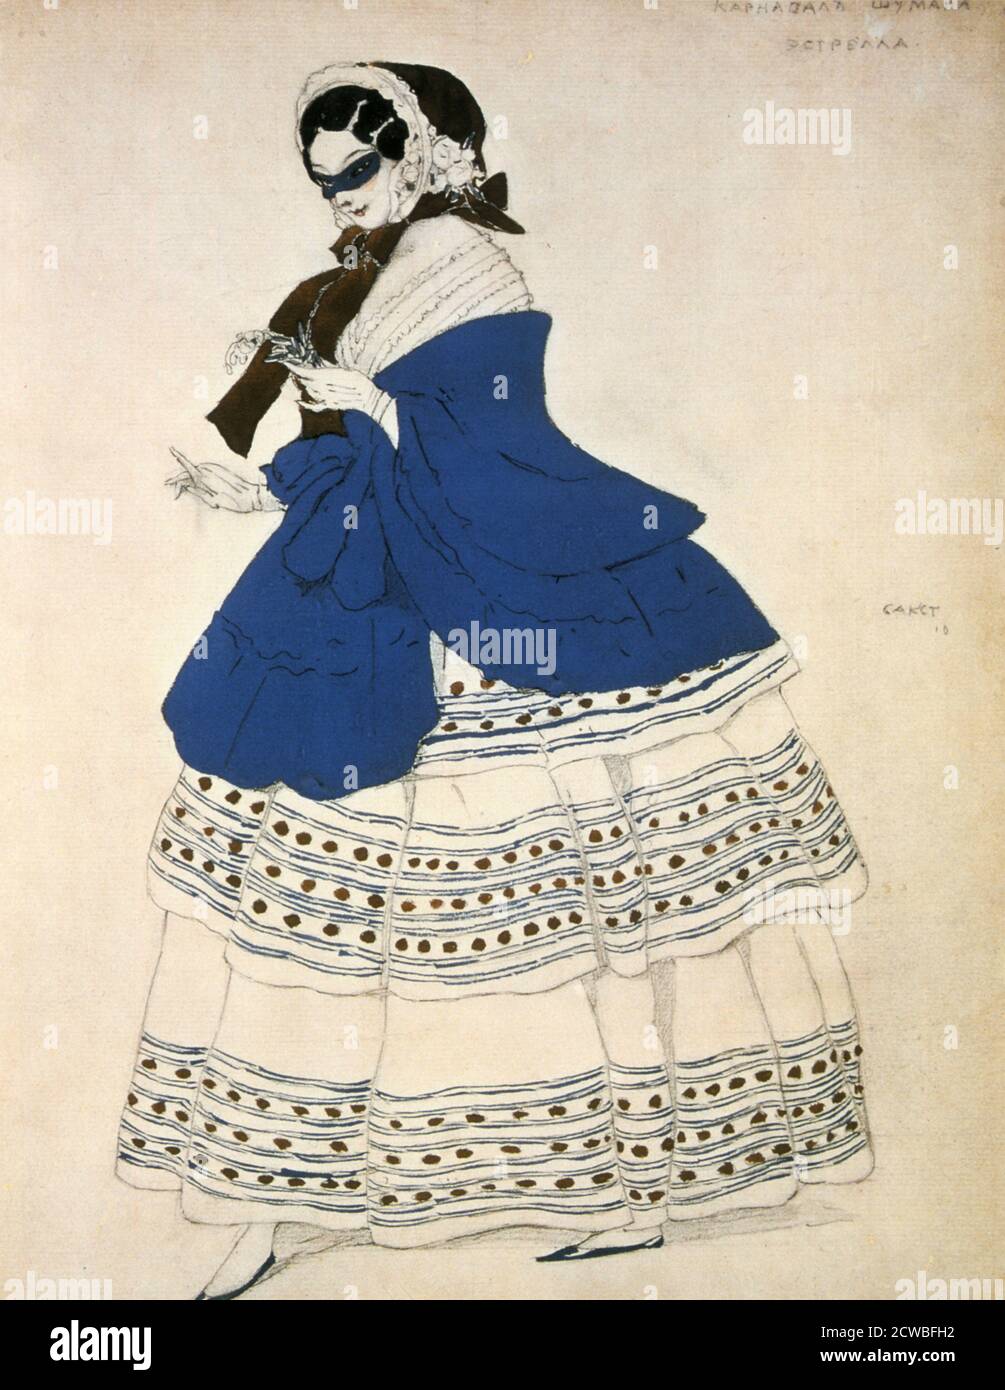 Estrella, Entwurf für ein Kostüm für das Ballett Karneval von Leon Bakst, komponiert von Robert Schumann, 1919. Von der Eremitage Museum, St. Petersburg, Russland. Stockfoto